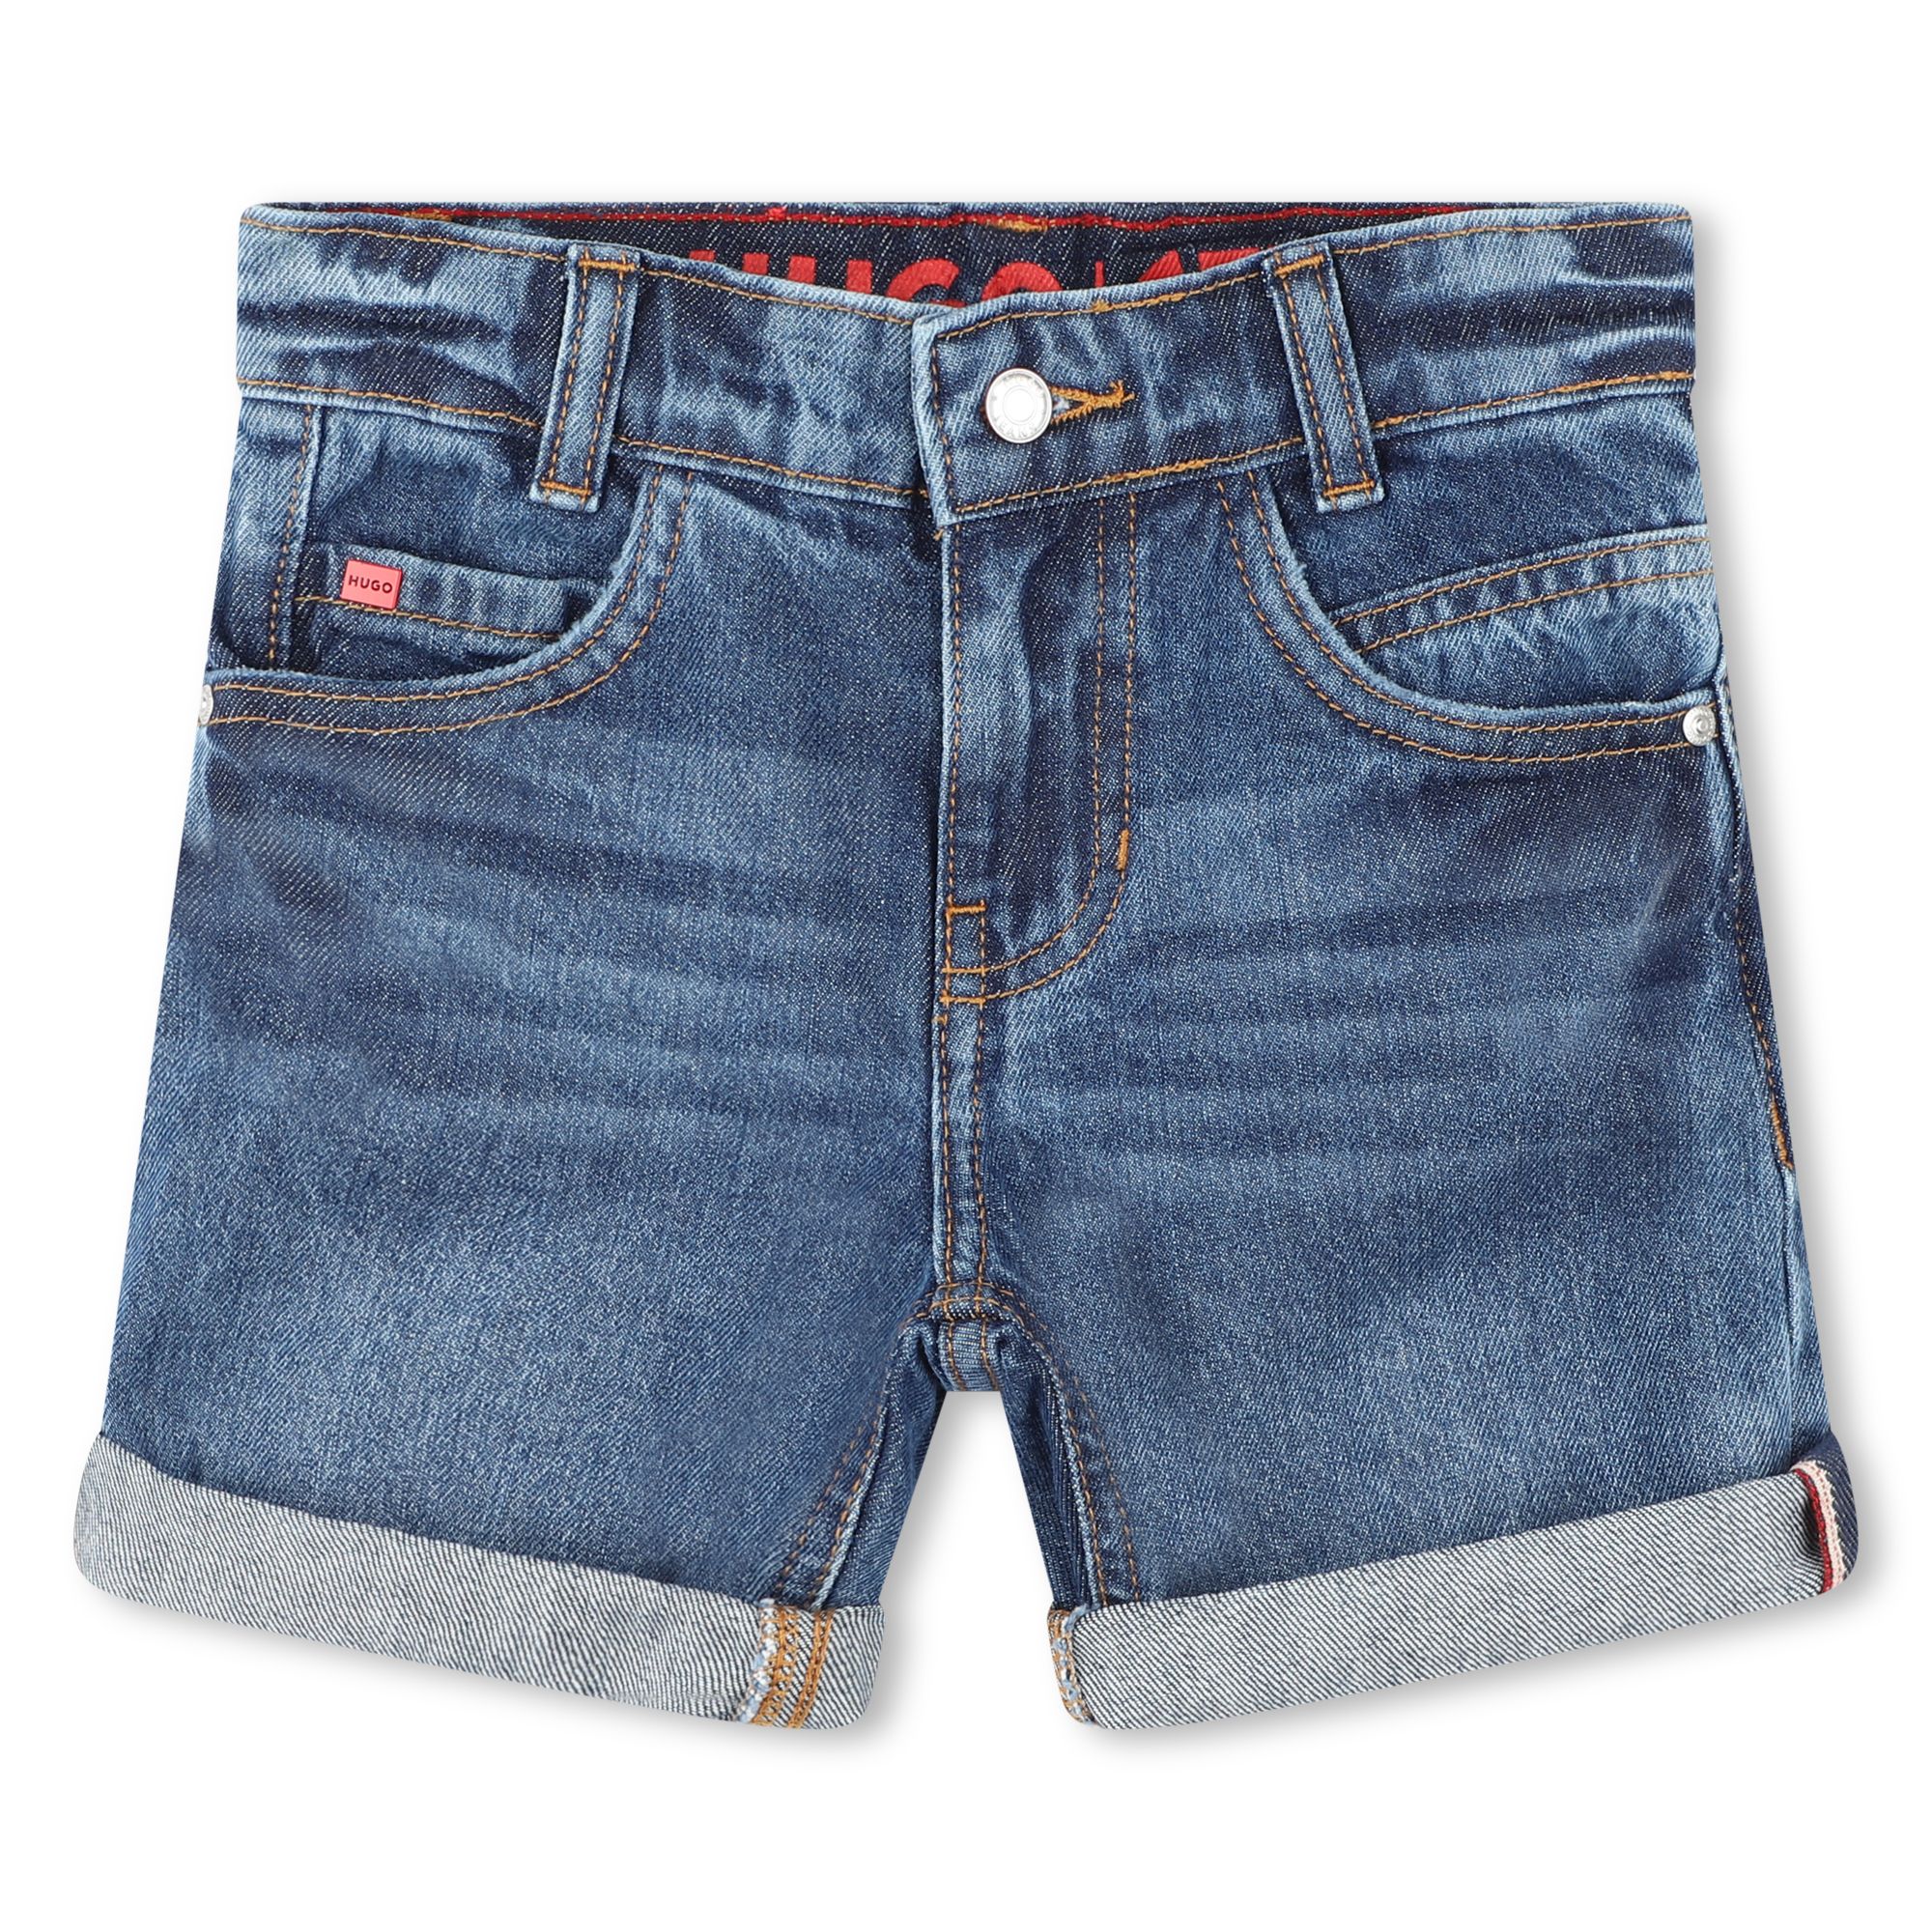 Bermuda 5 poches en jean HUGO pour GARCON